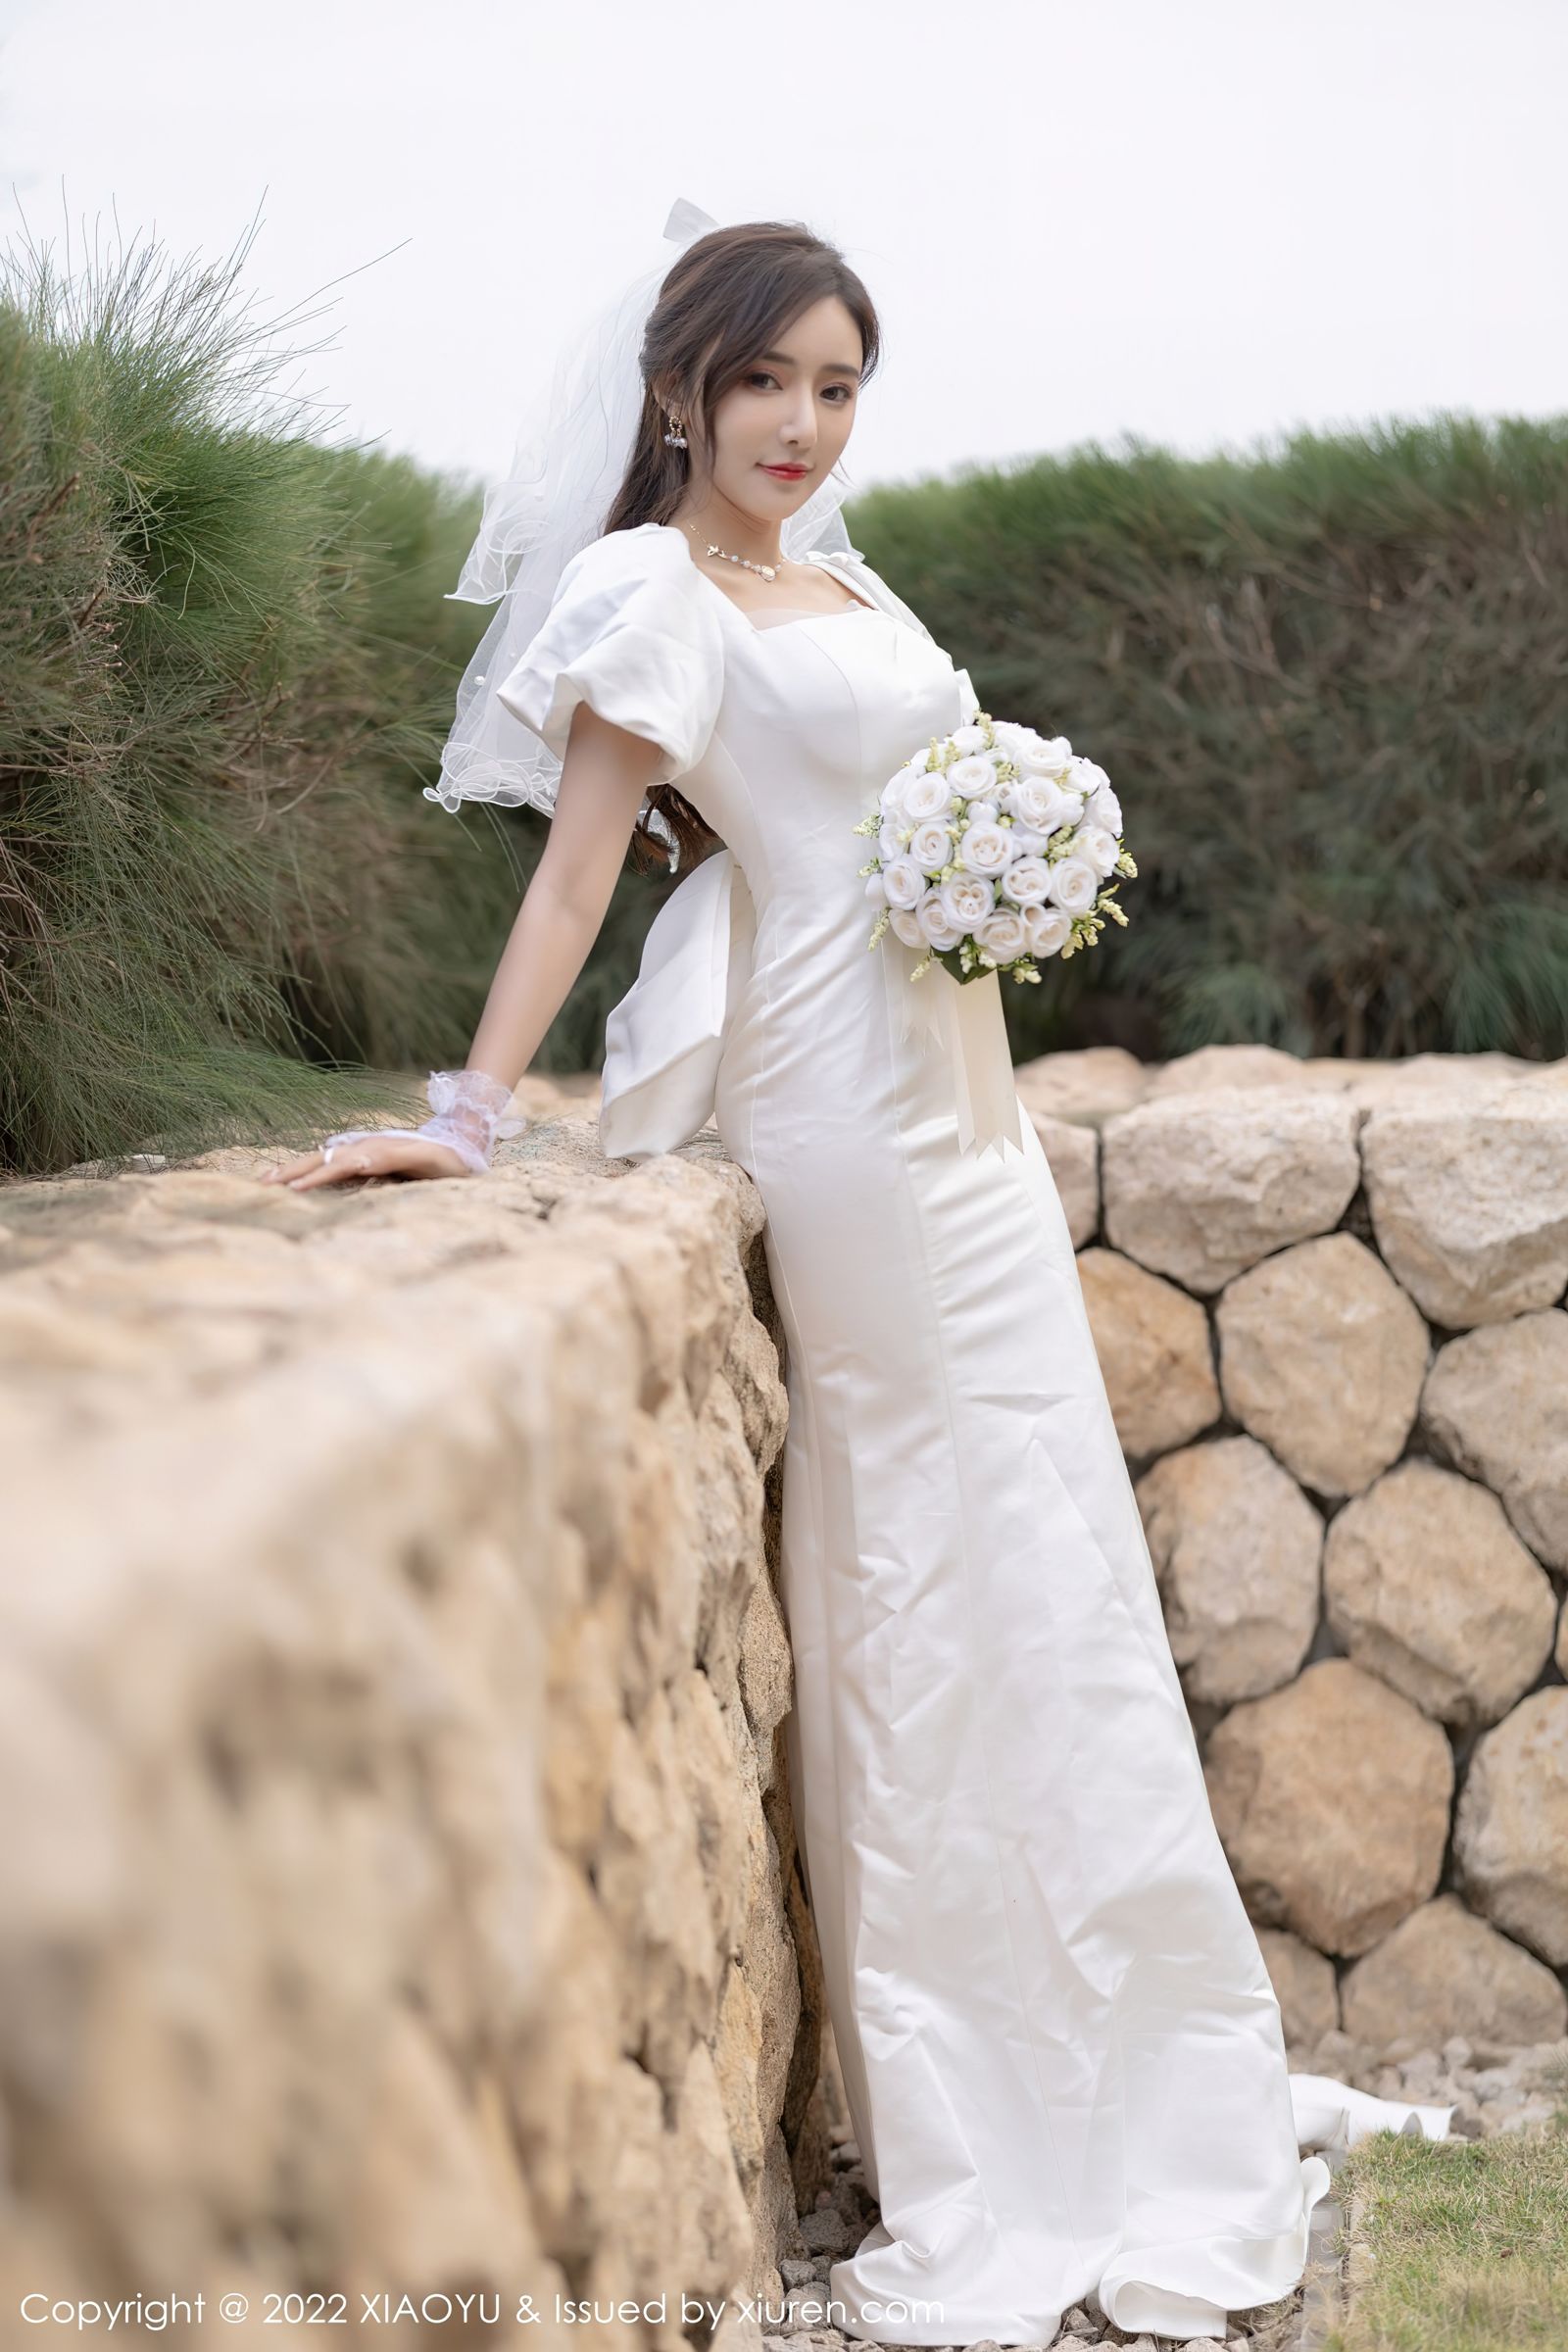 [XIAOYU语画界]-Vol.733-王馨瑶yanni-白色婚纱礼裙搭配白色丝袜-套图之家